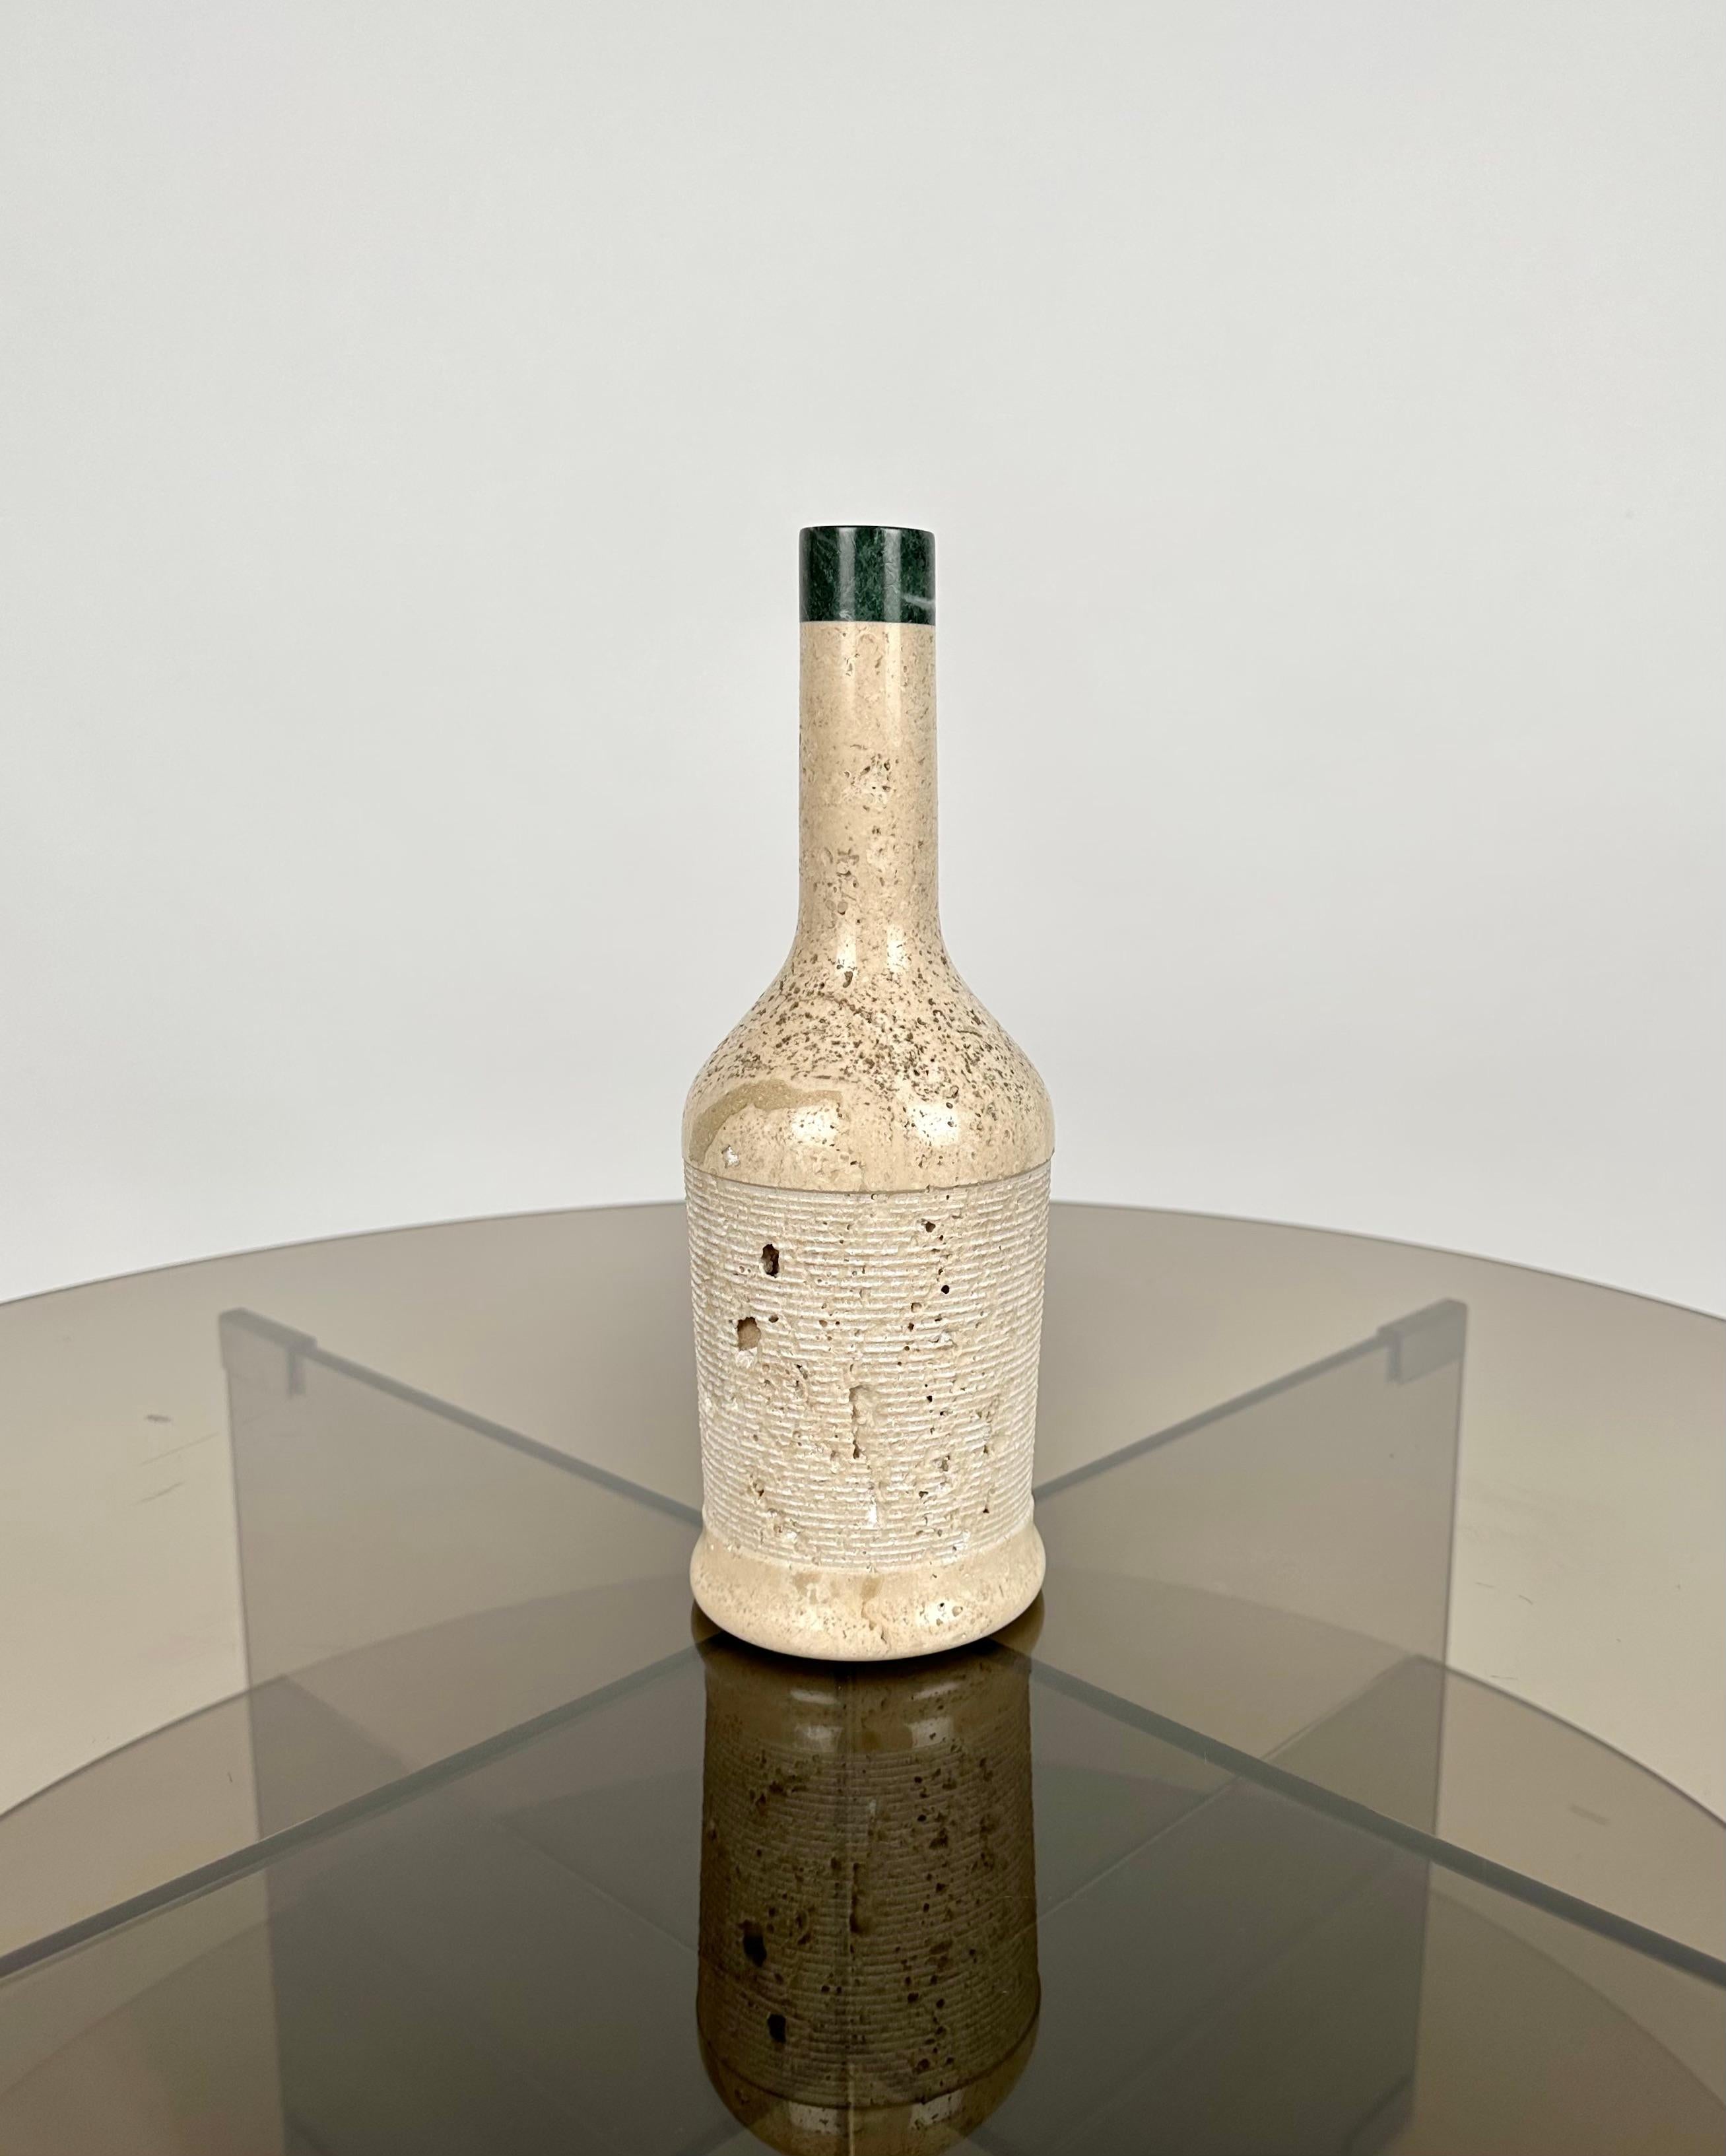 Schöne flaschenförmige Skulptur aus Travertinmarmor.

Hergestellt in Italien in den 1970er Jahren.